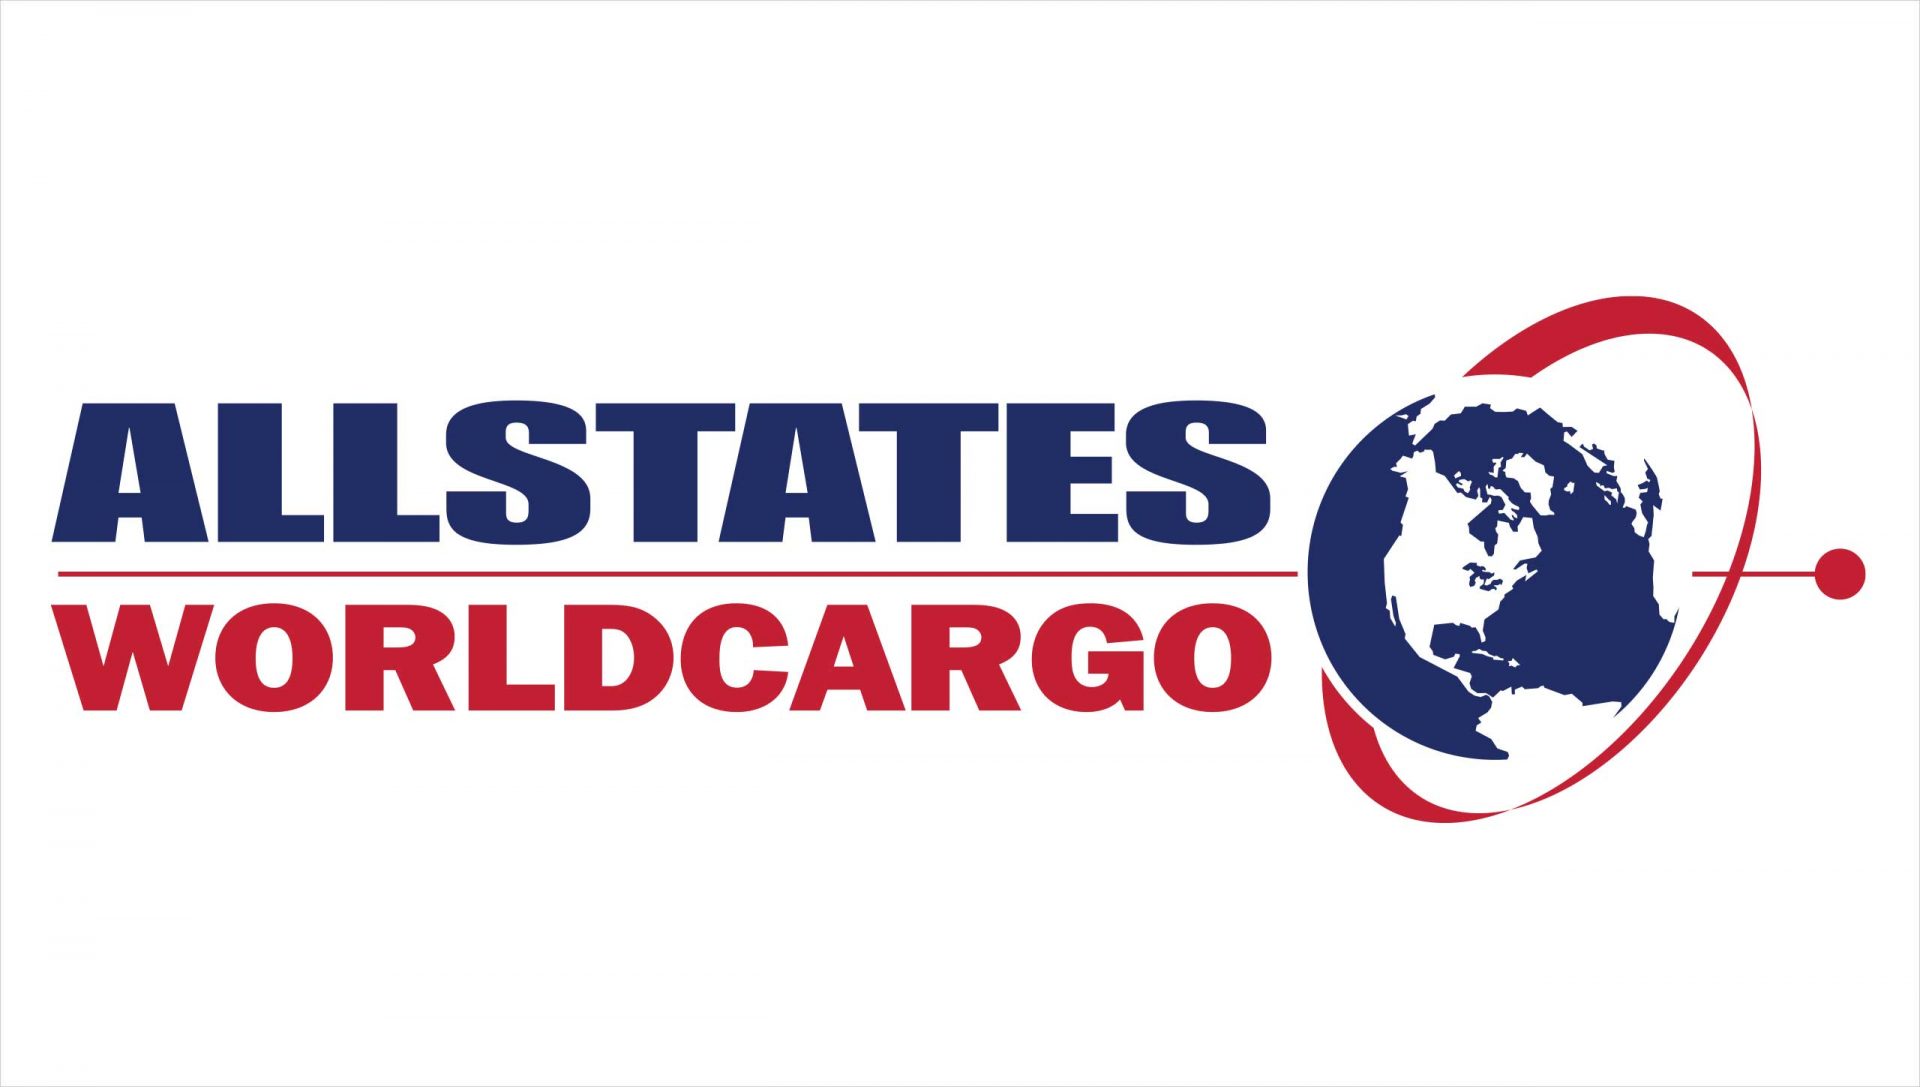 Allstates WorldCargo, Inc